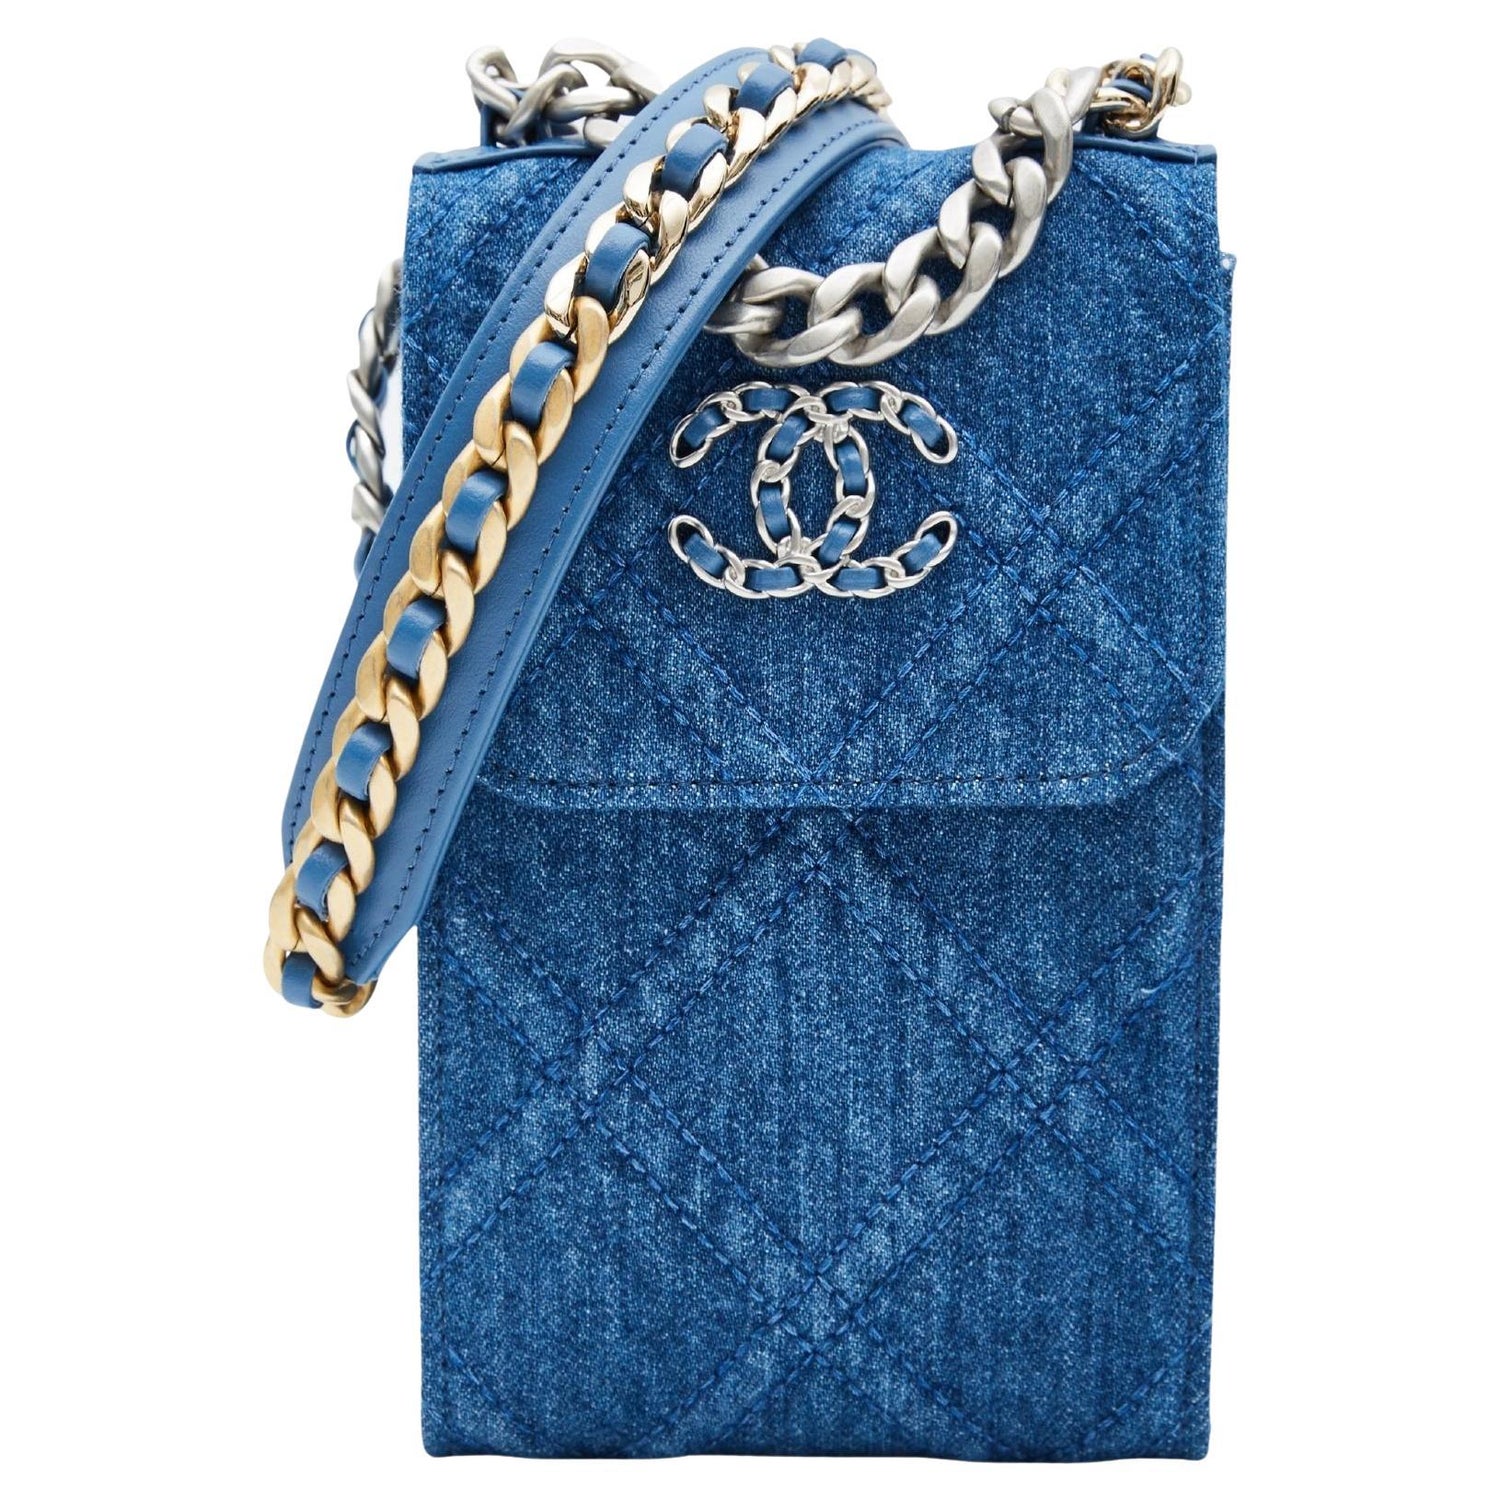 Chanel Denim Bag 2021 - 2 For Sale on 1stDibs